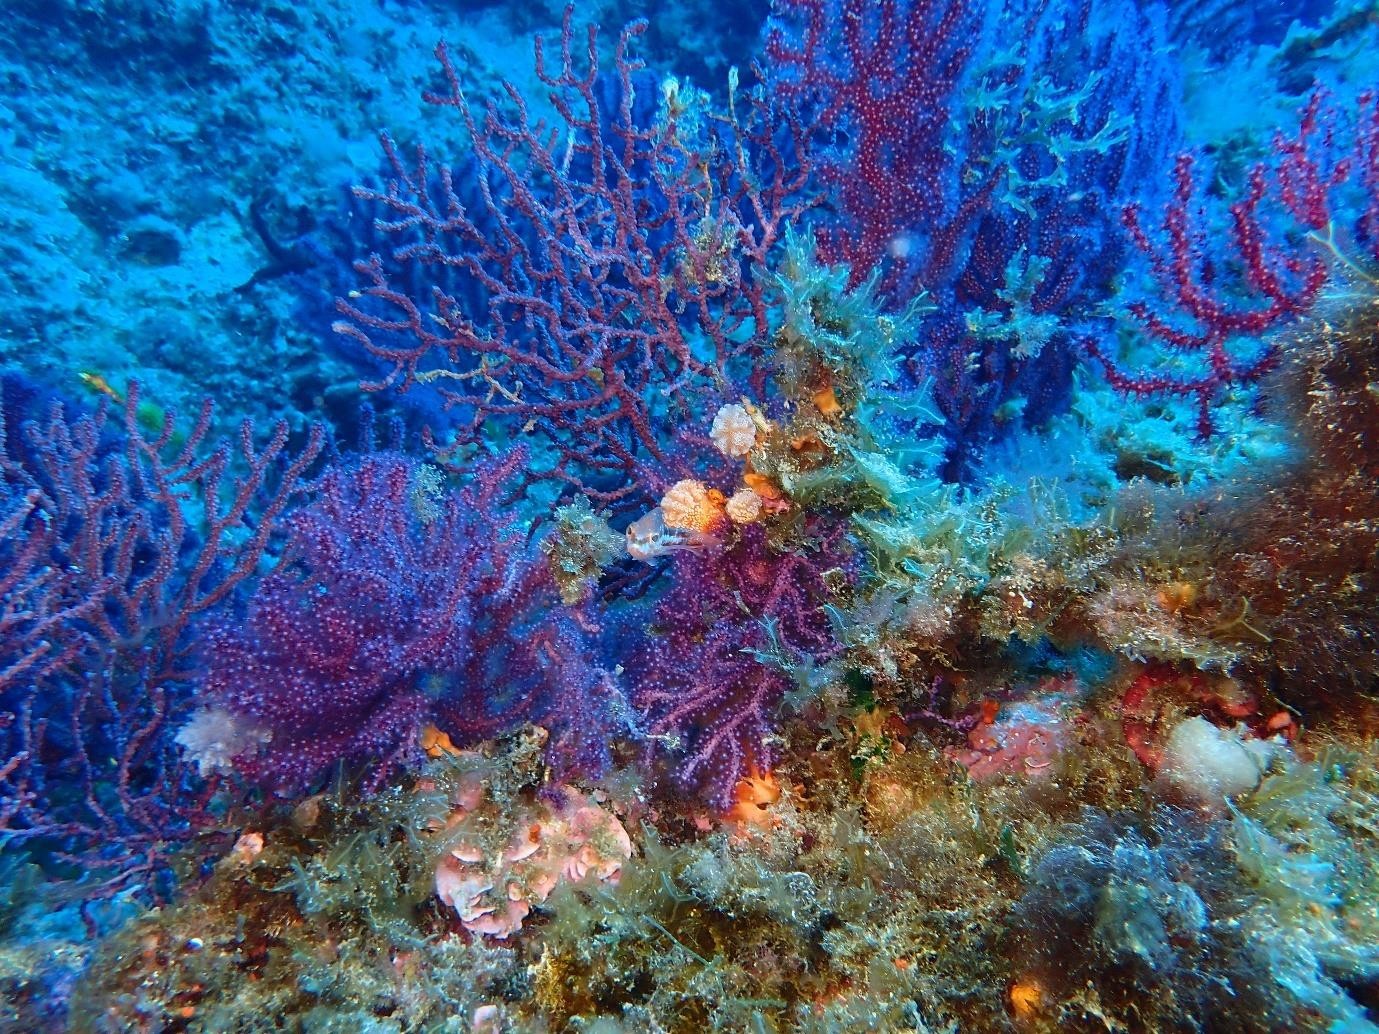 Fondos de coral